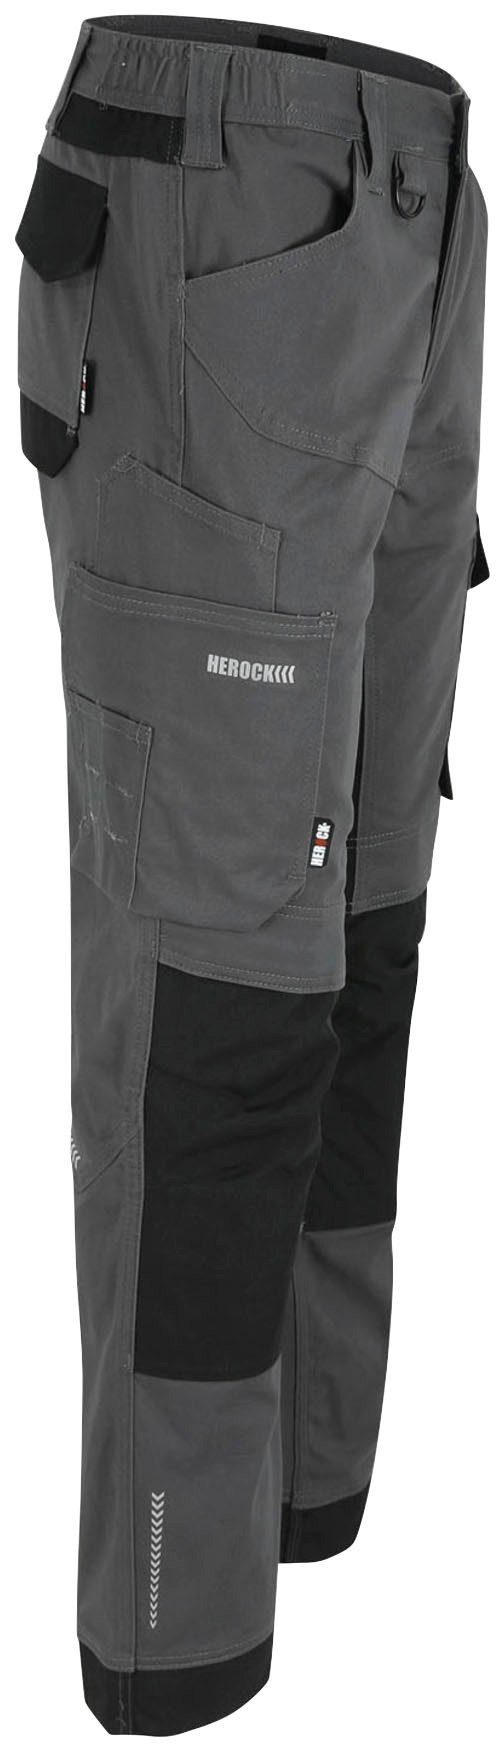 Herock Arbeitshose XENI Multi-pocket, Stretch, grau und Baumwolle, bequem wasserabweisend, weich